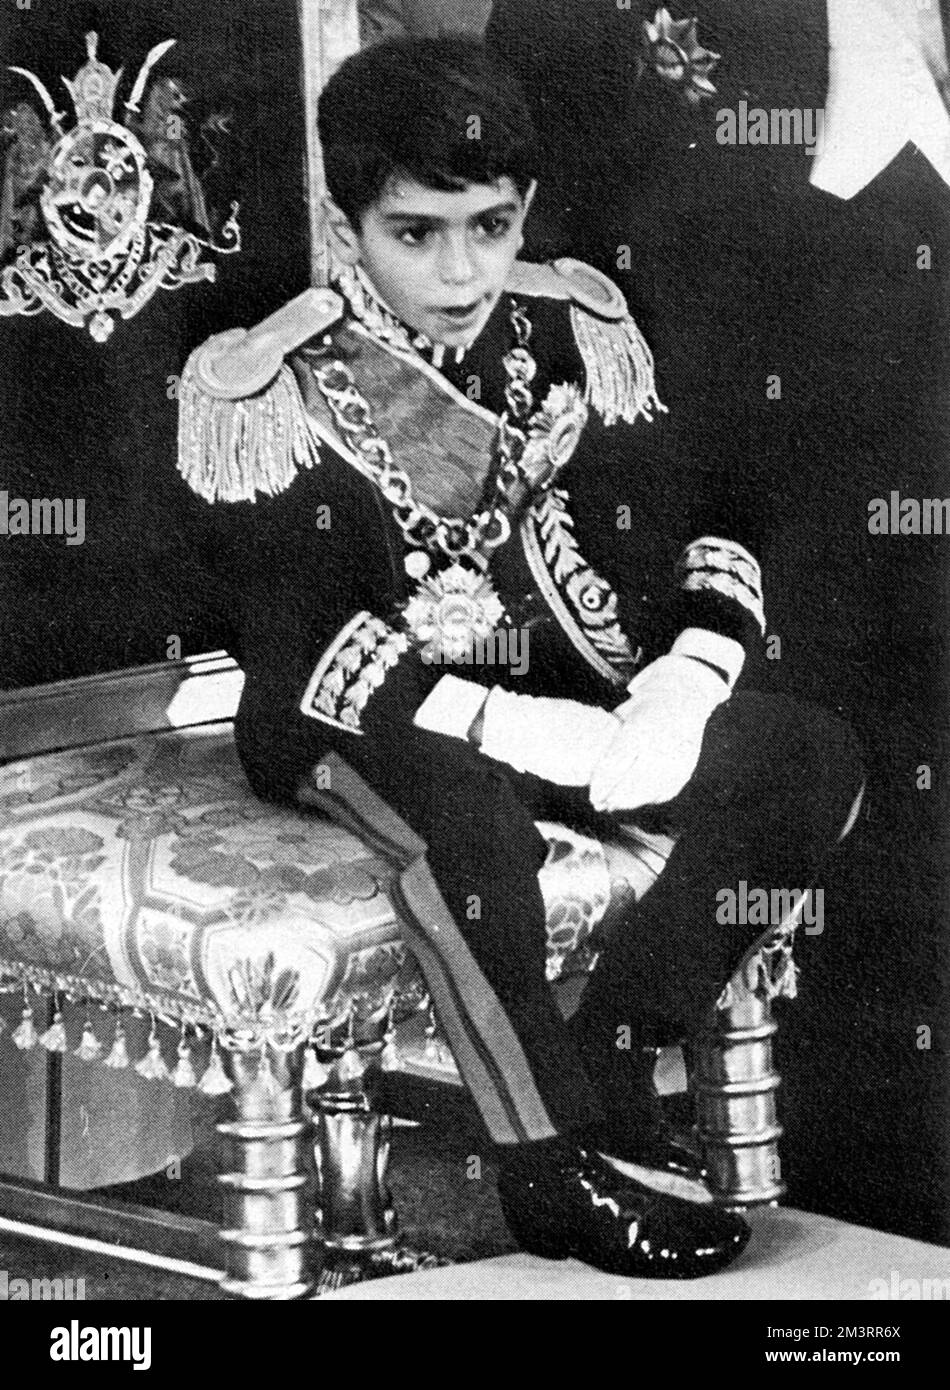 Reza Pahlavi, Kronprinz des Iran (1960-) bei der Krönung des Schahs des Iran Mohammad Reza Pahlavi (1919-1980). Am 26.. Oktober 1967, 26 Jahre nach seiner Herrschaft als Schah („König“), übernahm er in einer aufwendigen Krönungszeremonie in Teheran den alten Titel Shahanshah („Kaiser“ oder „König der Könige“). Datum: 1967 Stockfoto